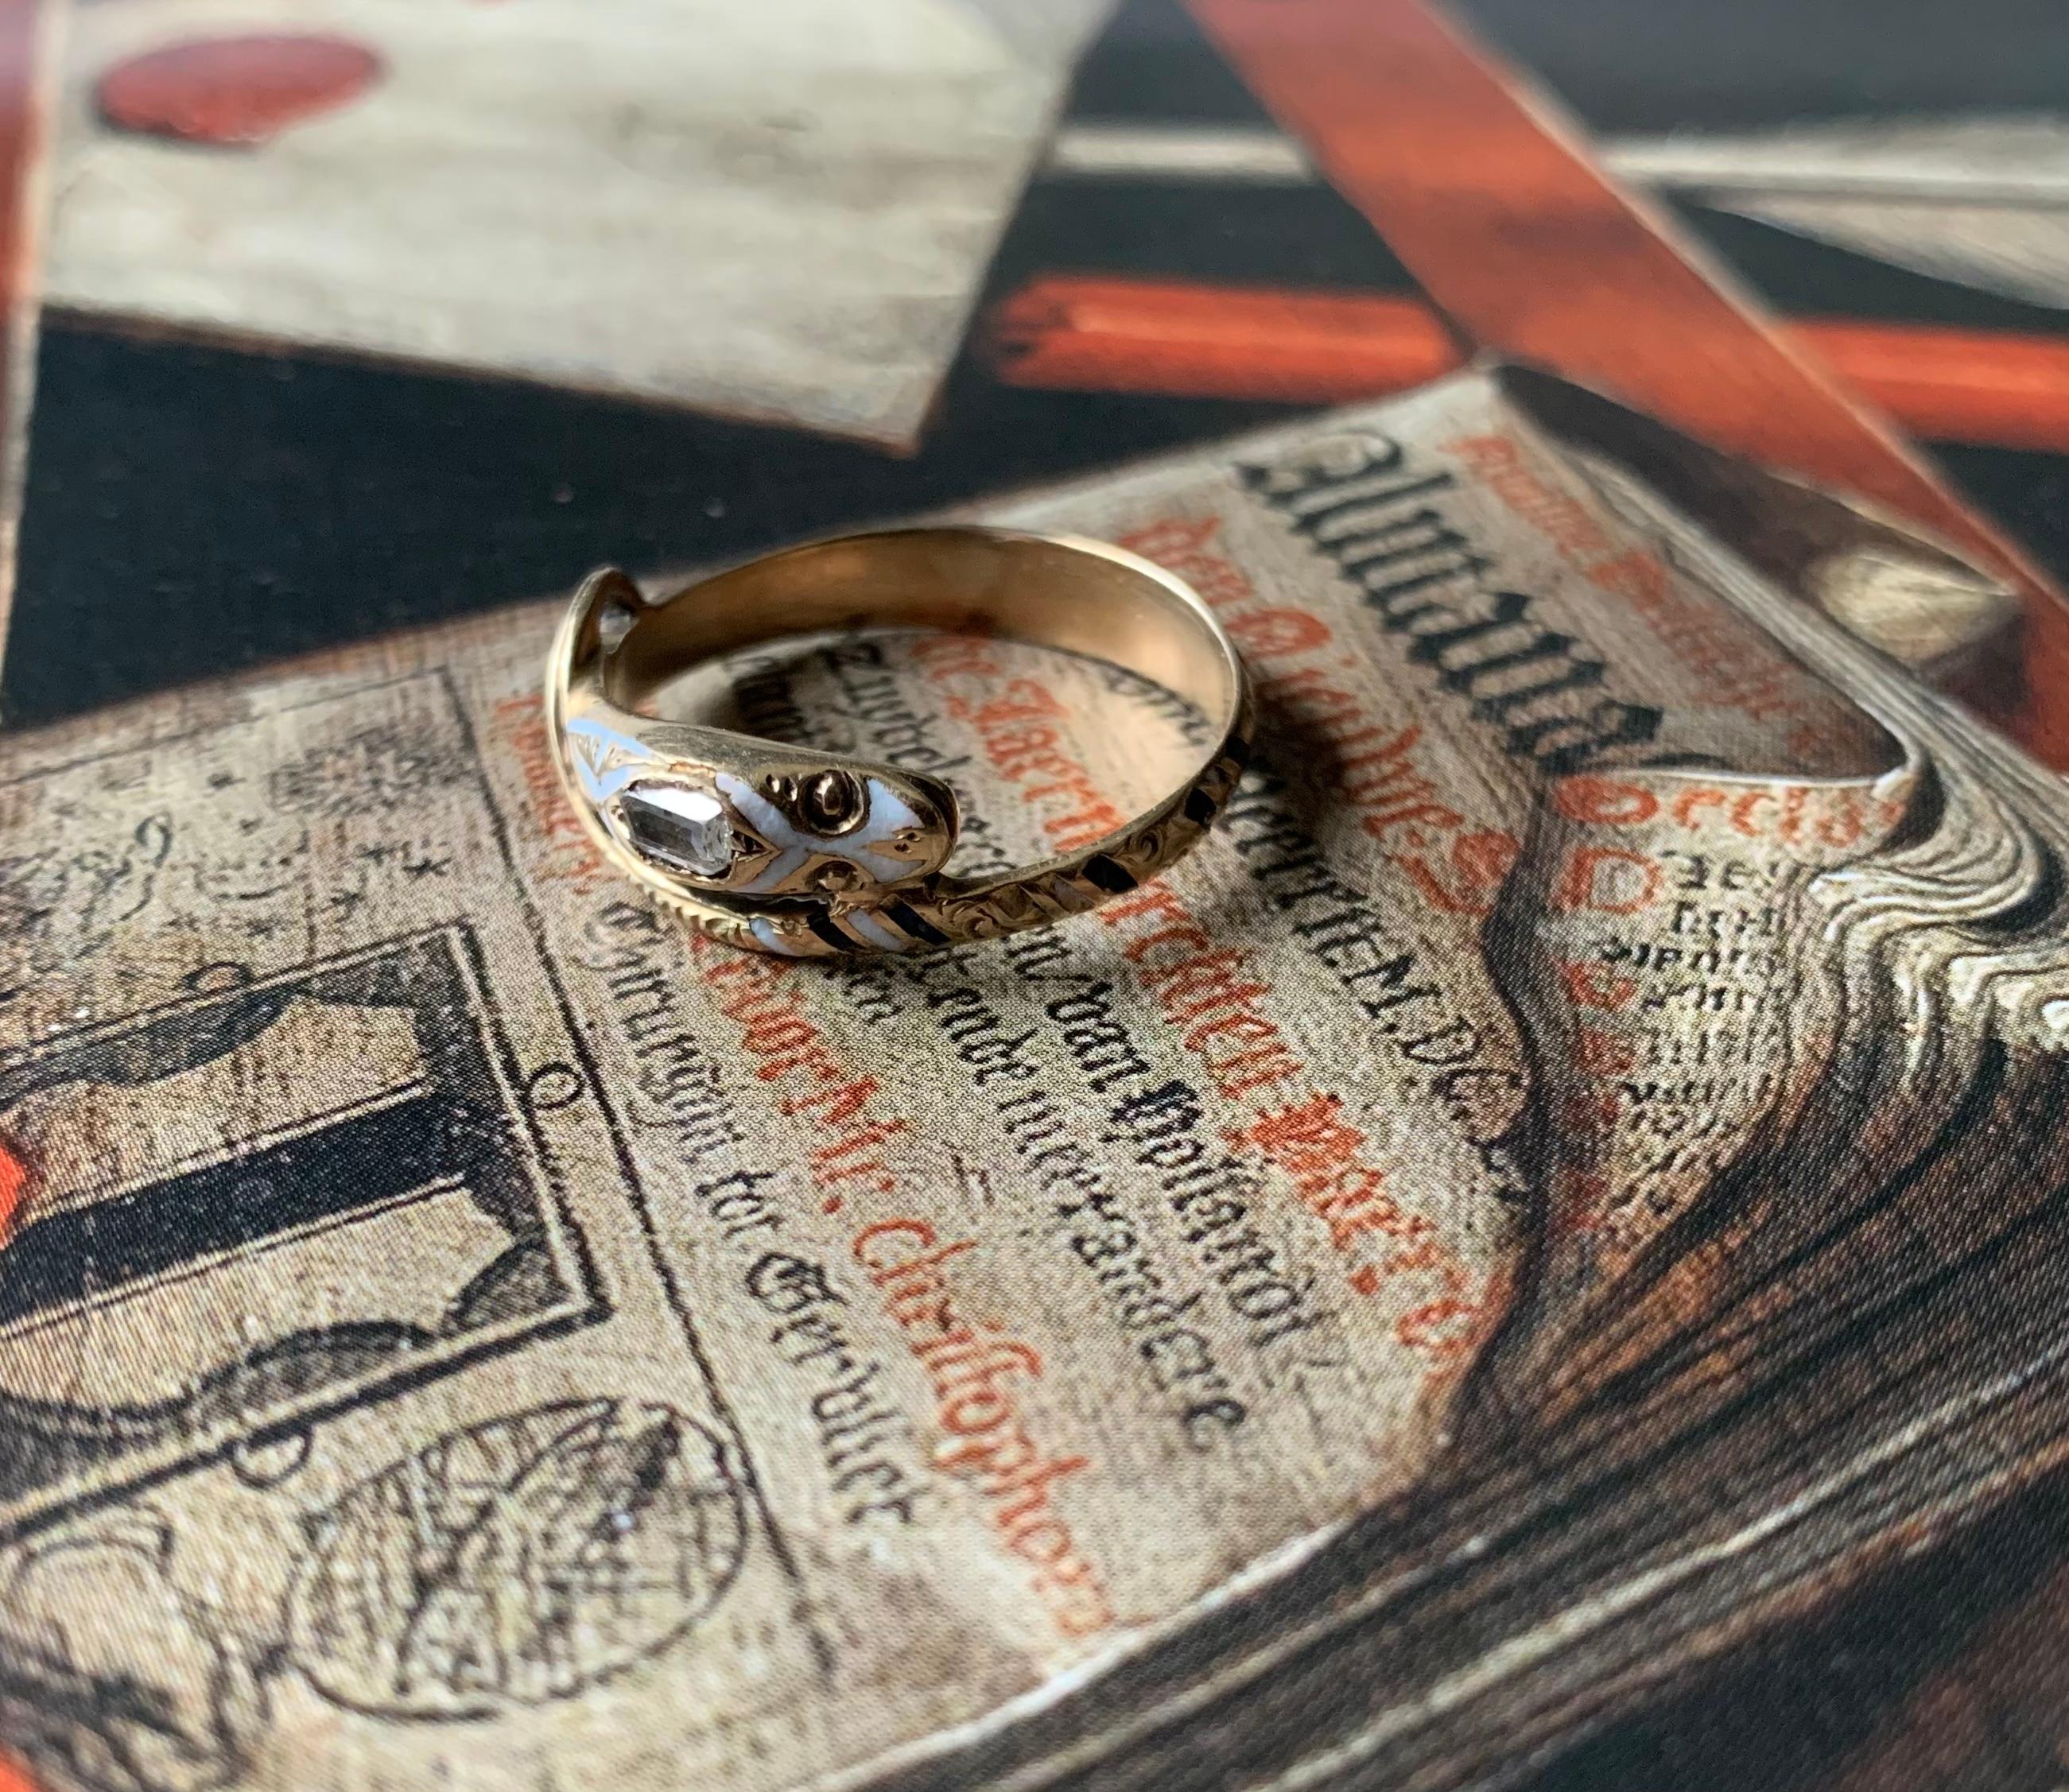 Feiner Schlangenring aus Gold mit Diamanten, weißem und Kobalt-Email in Museumsqualität aus der Spätrenaissance
17. Jahrhundert
Dieser schöne Ring ist ein bemerkenswertes Beispiel für Schmuck aus der Spätrenaissance, der in der ersten Hälfte des 17.